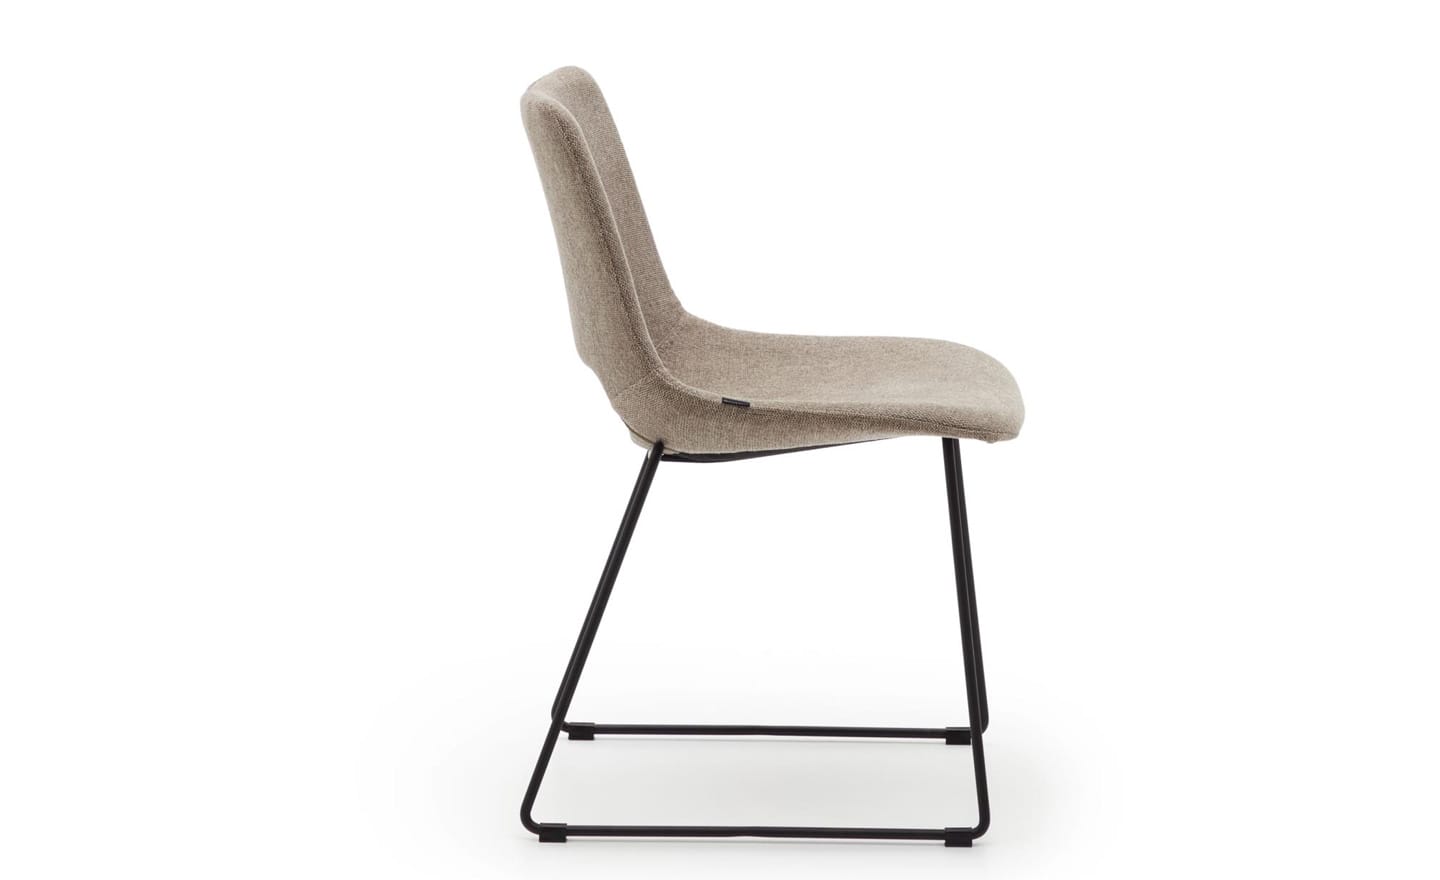 Cadeira Zahara Castanho, estofada cor castanho, pernas de aço preto, design moderno figura curvada, proteções de plástico nas pernas.